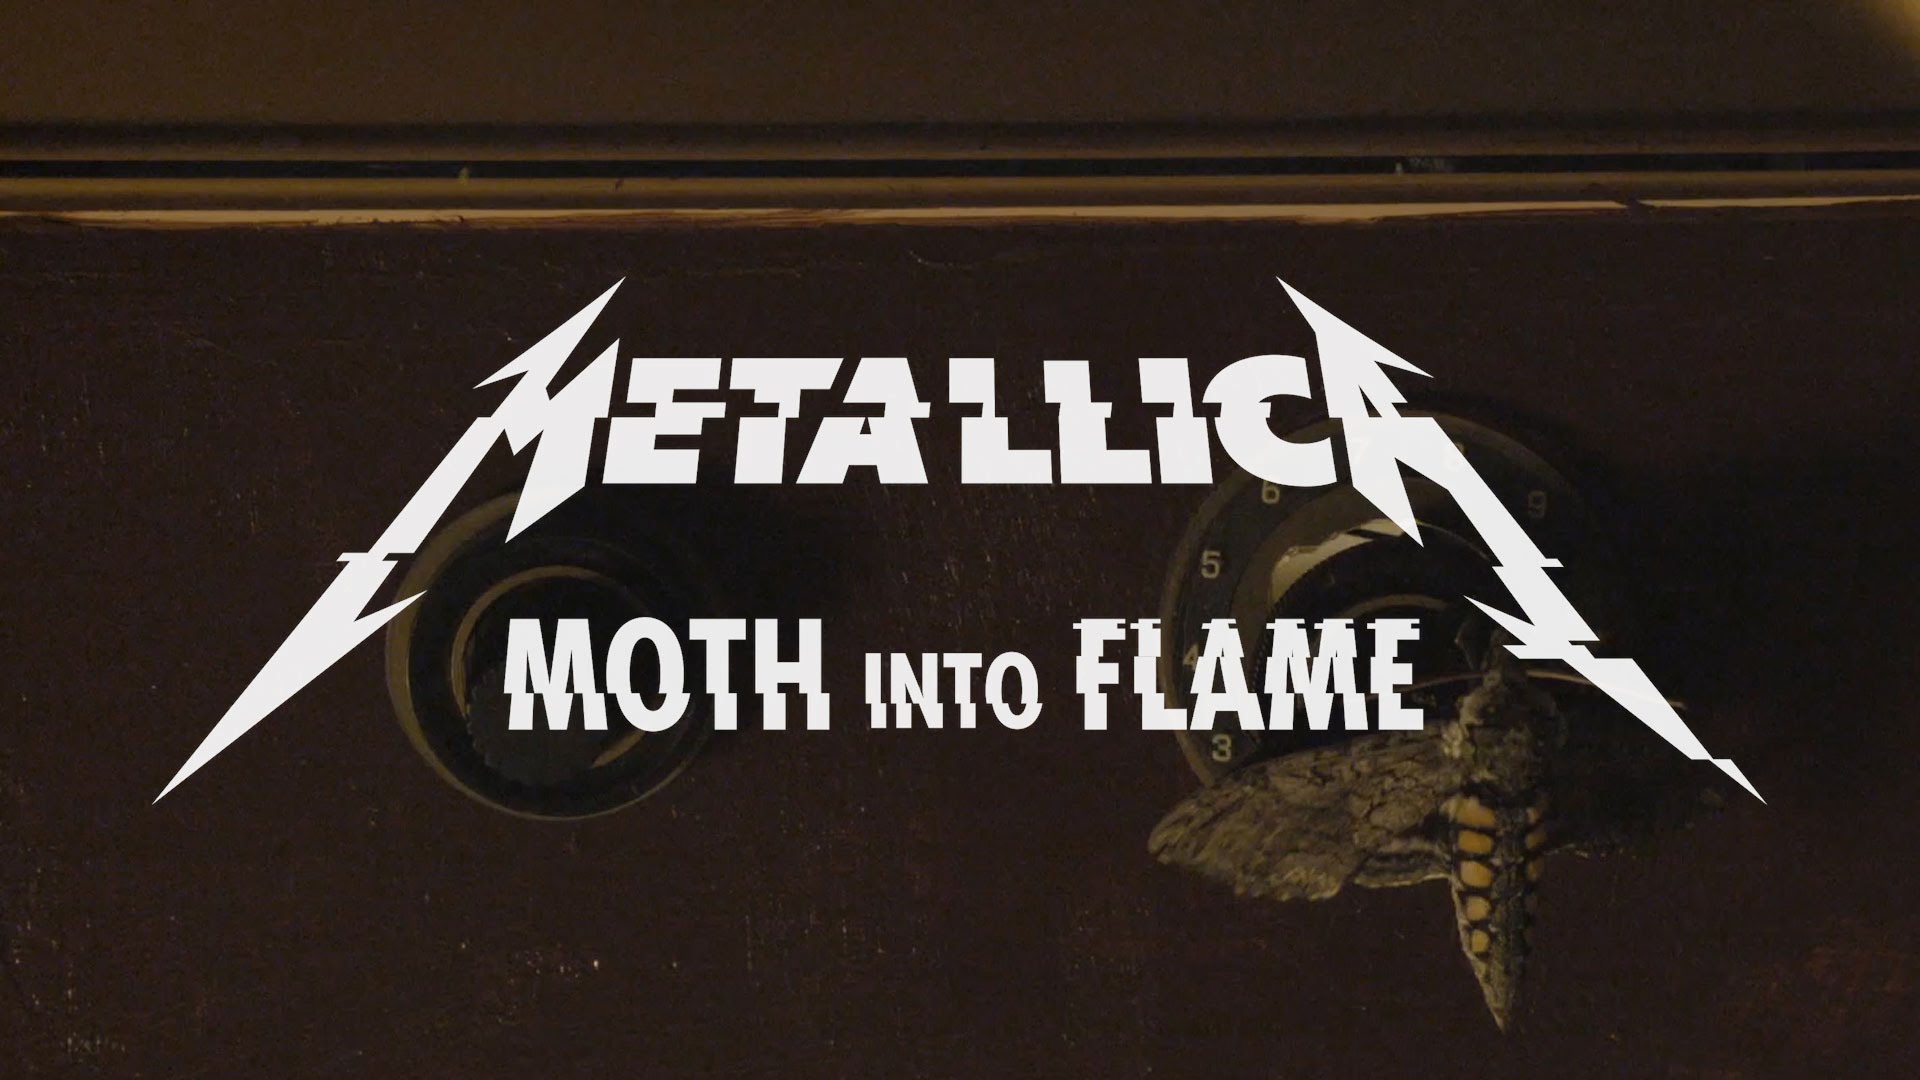 Metallica estrena video y canción de su nuevo disco, escucha “Moth Into Flame”